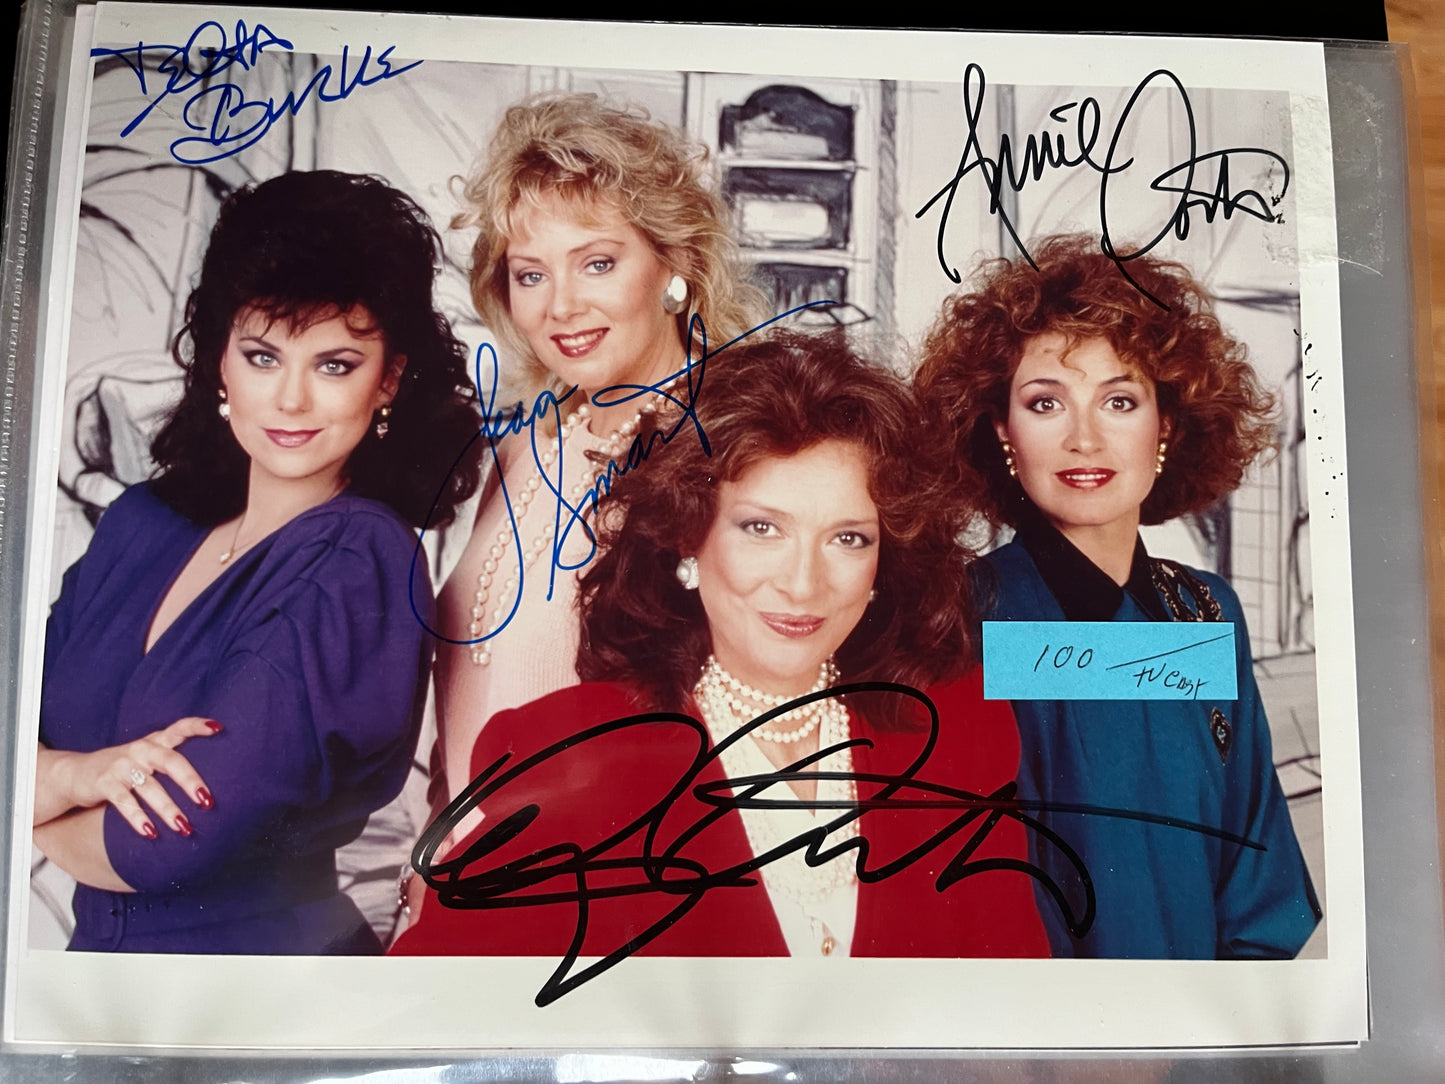 DESIGNING WOMEN, TV cast photo, autographs